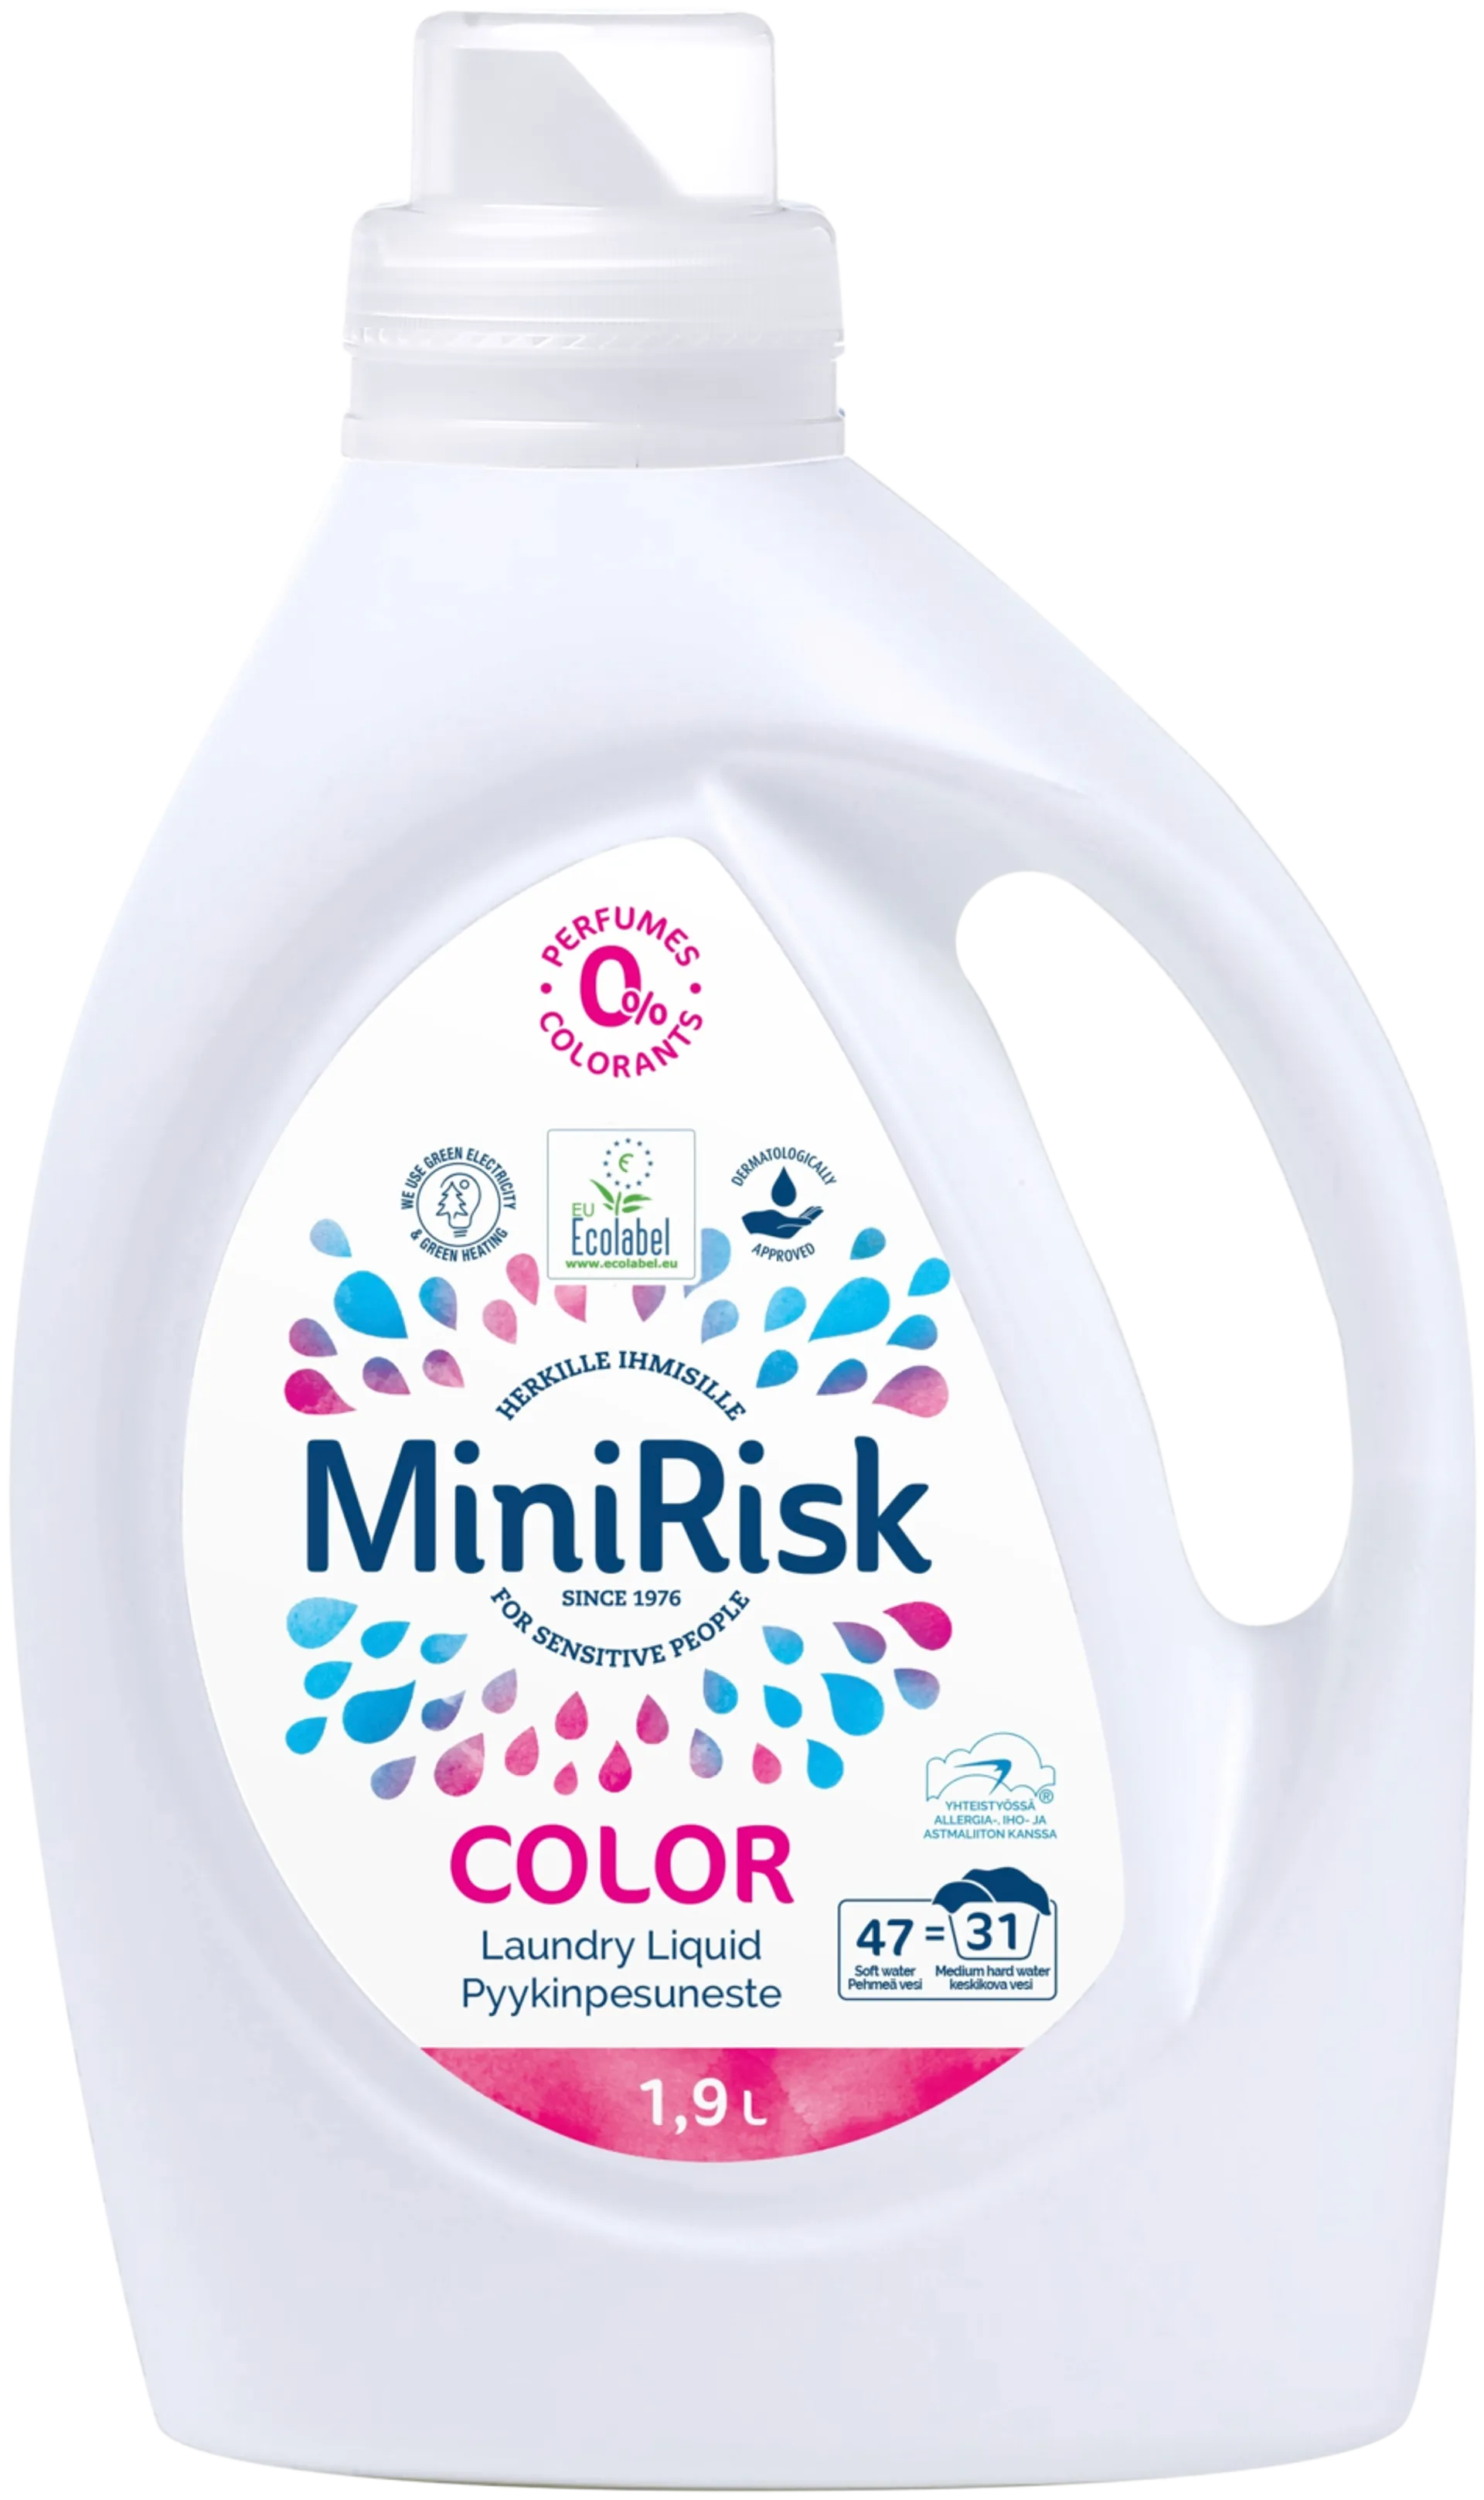 Mini Risk Pyykinpesuneste Color 1,9L